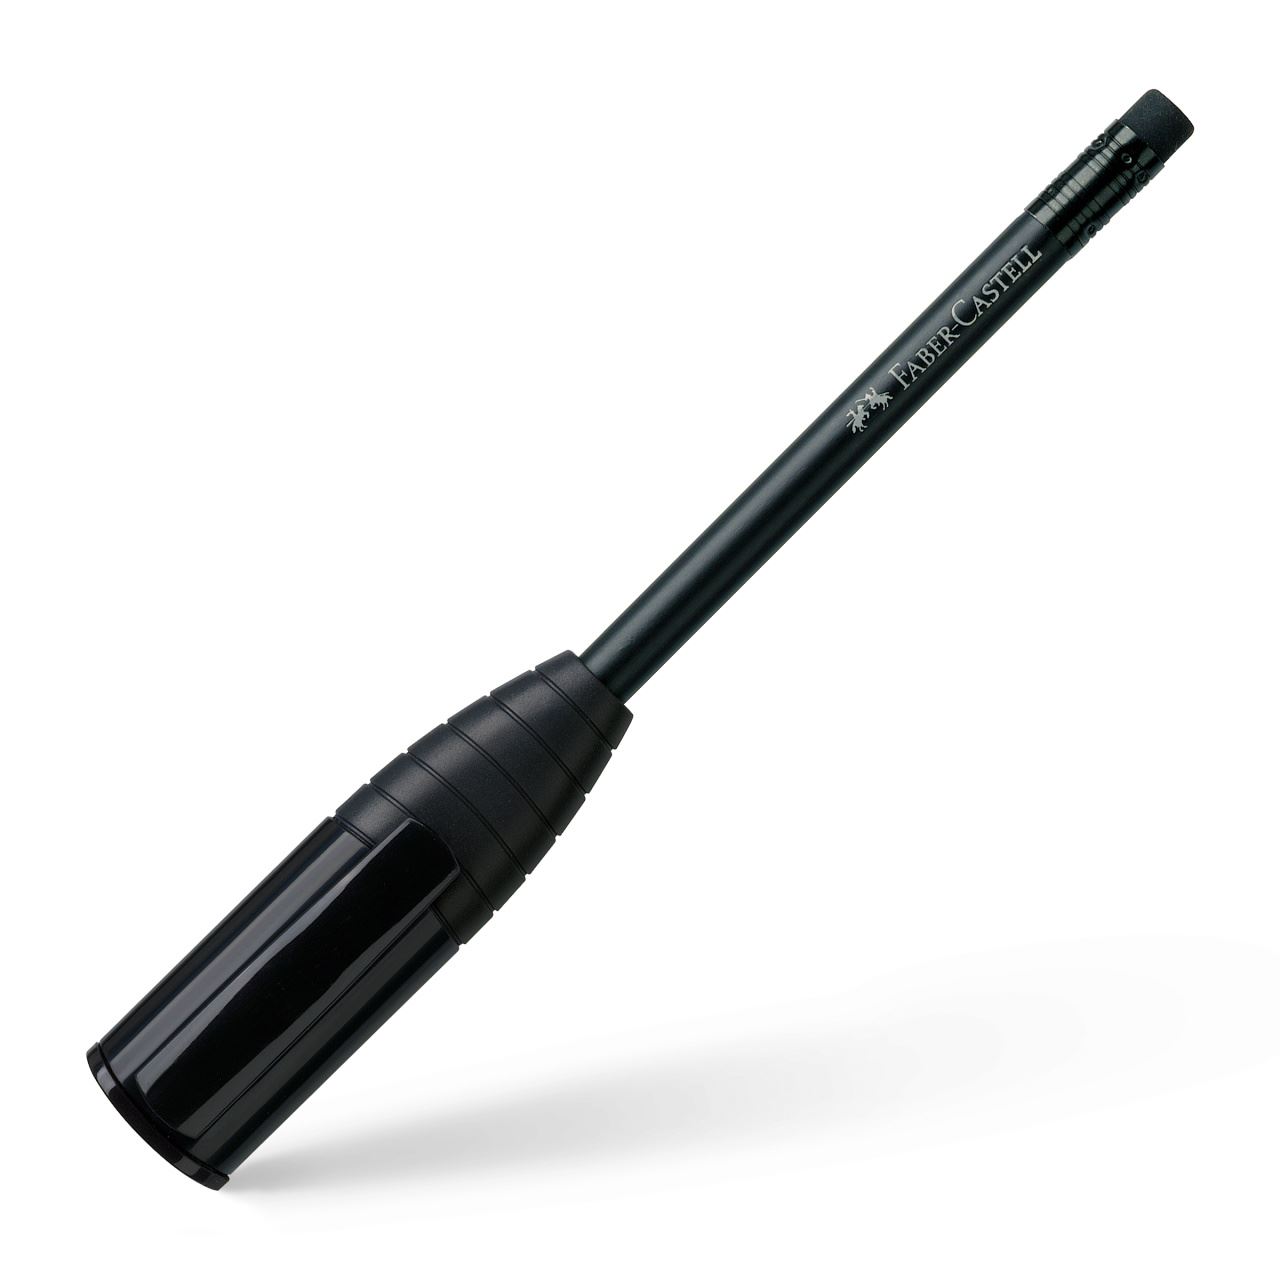 Faber-Castell - Perfekter Bleistift III mit eingebauter Spitzerbox, schwarz